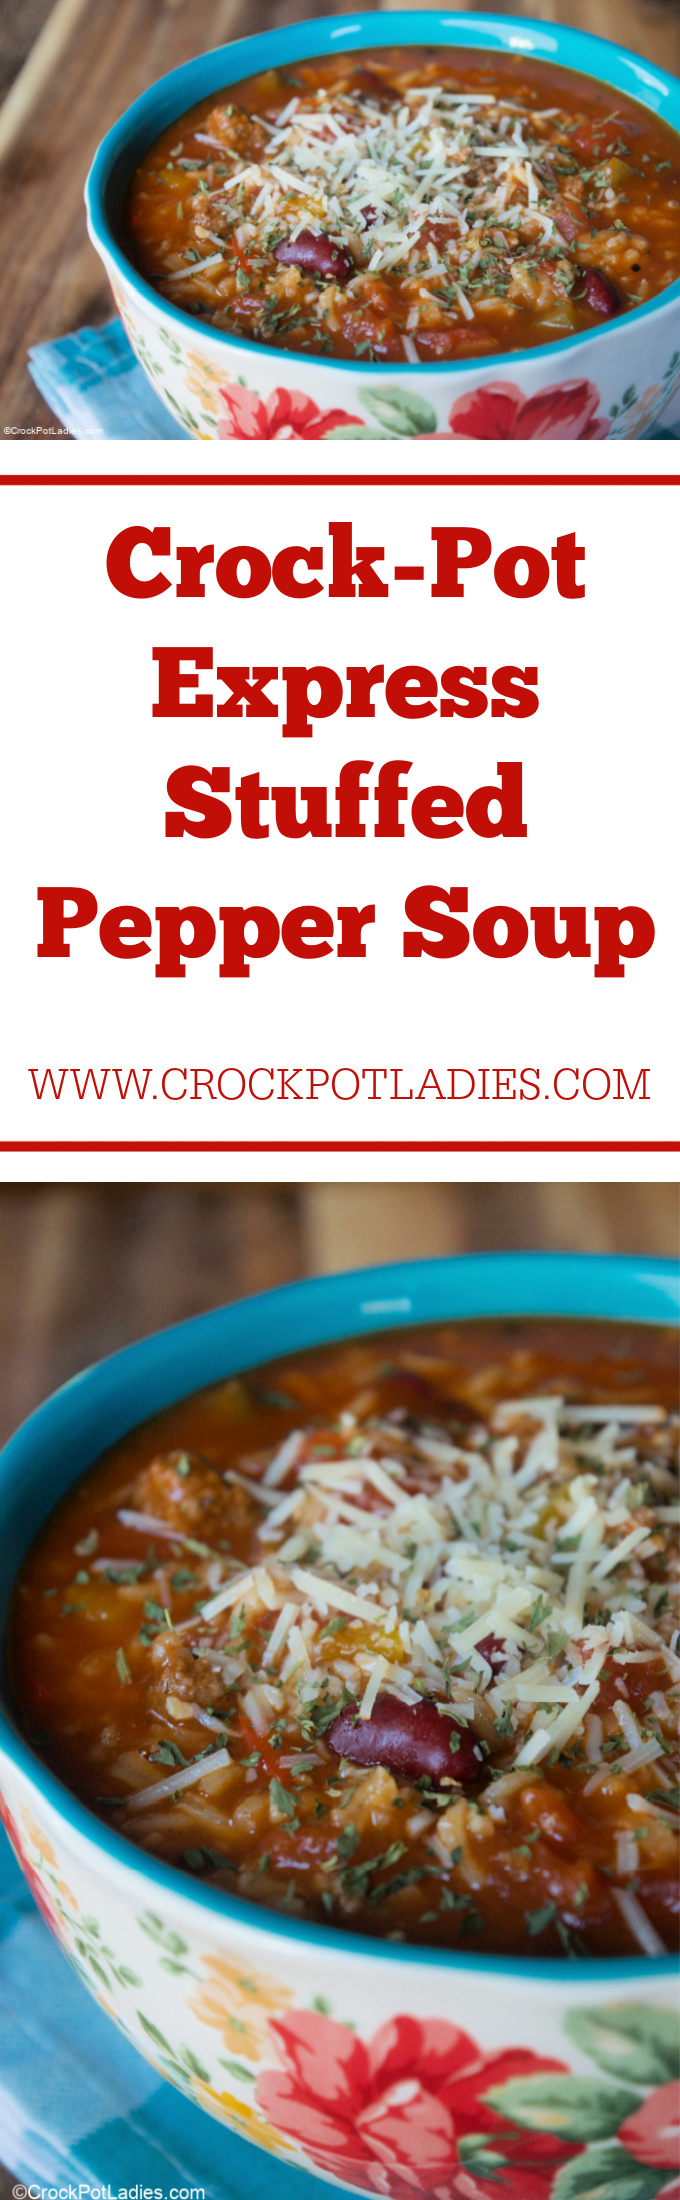 Crock-Pot Express Stuffed Pepper Soup